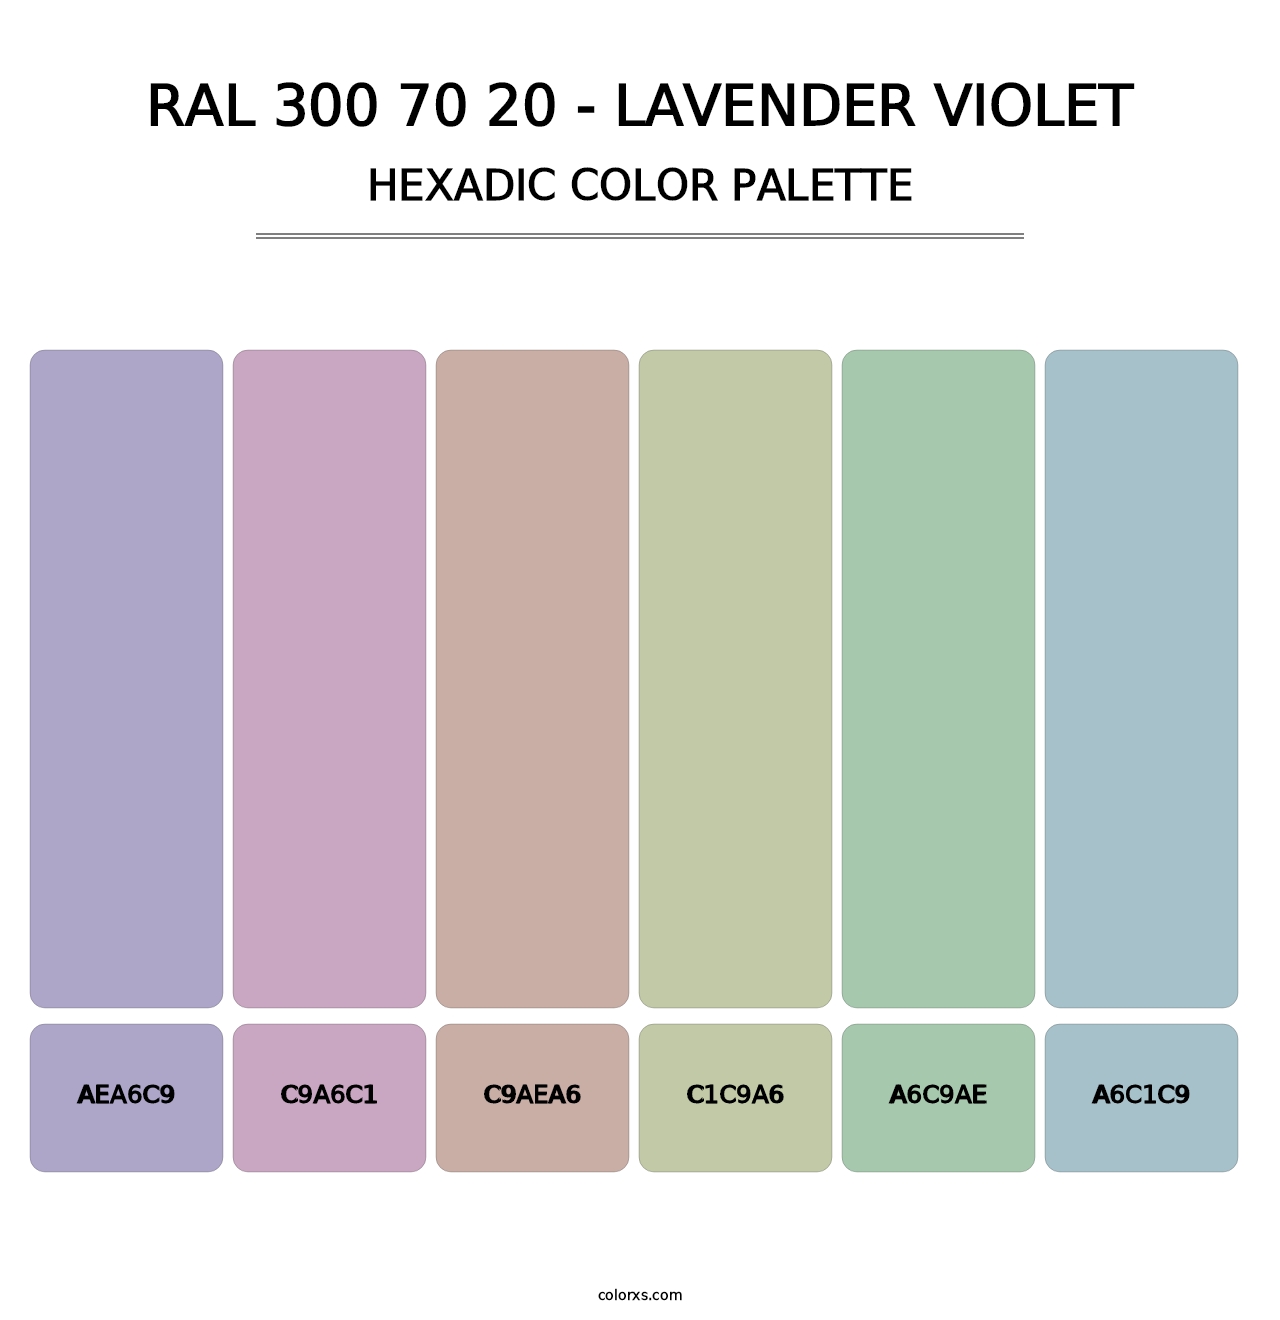 RAL 300 70 20 - Lavender Violet - Hexadic Color Palette